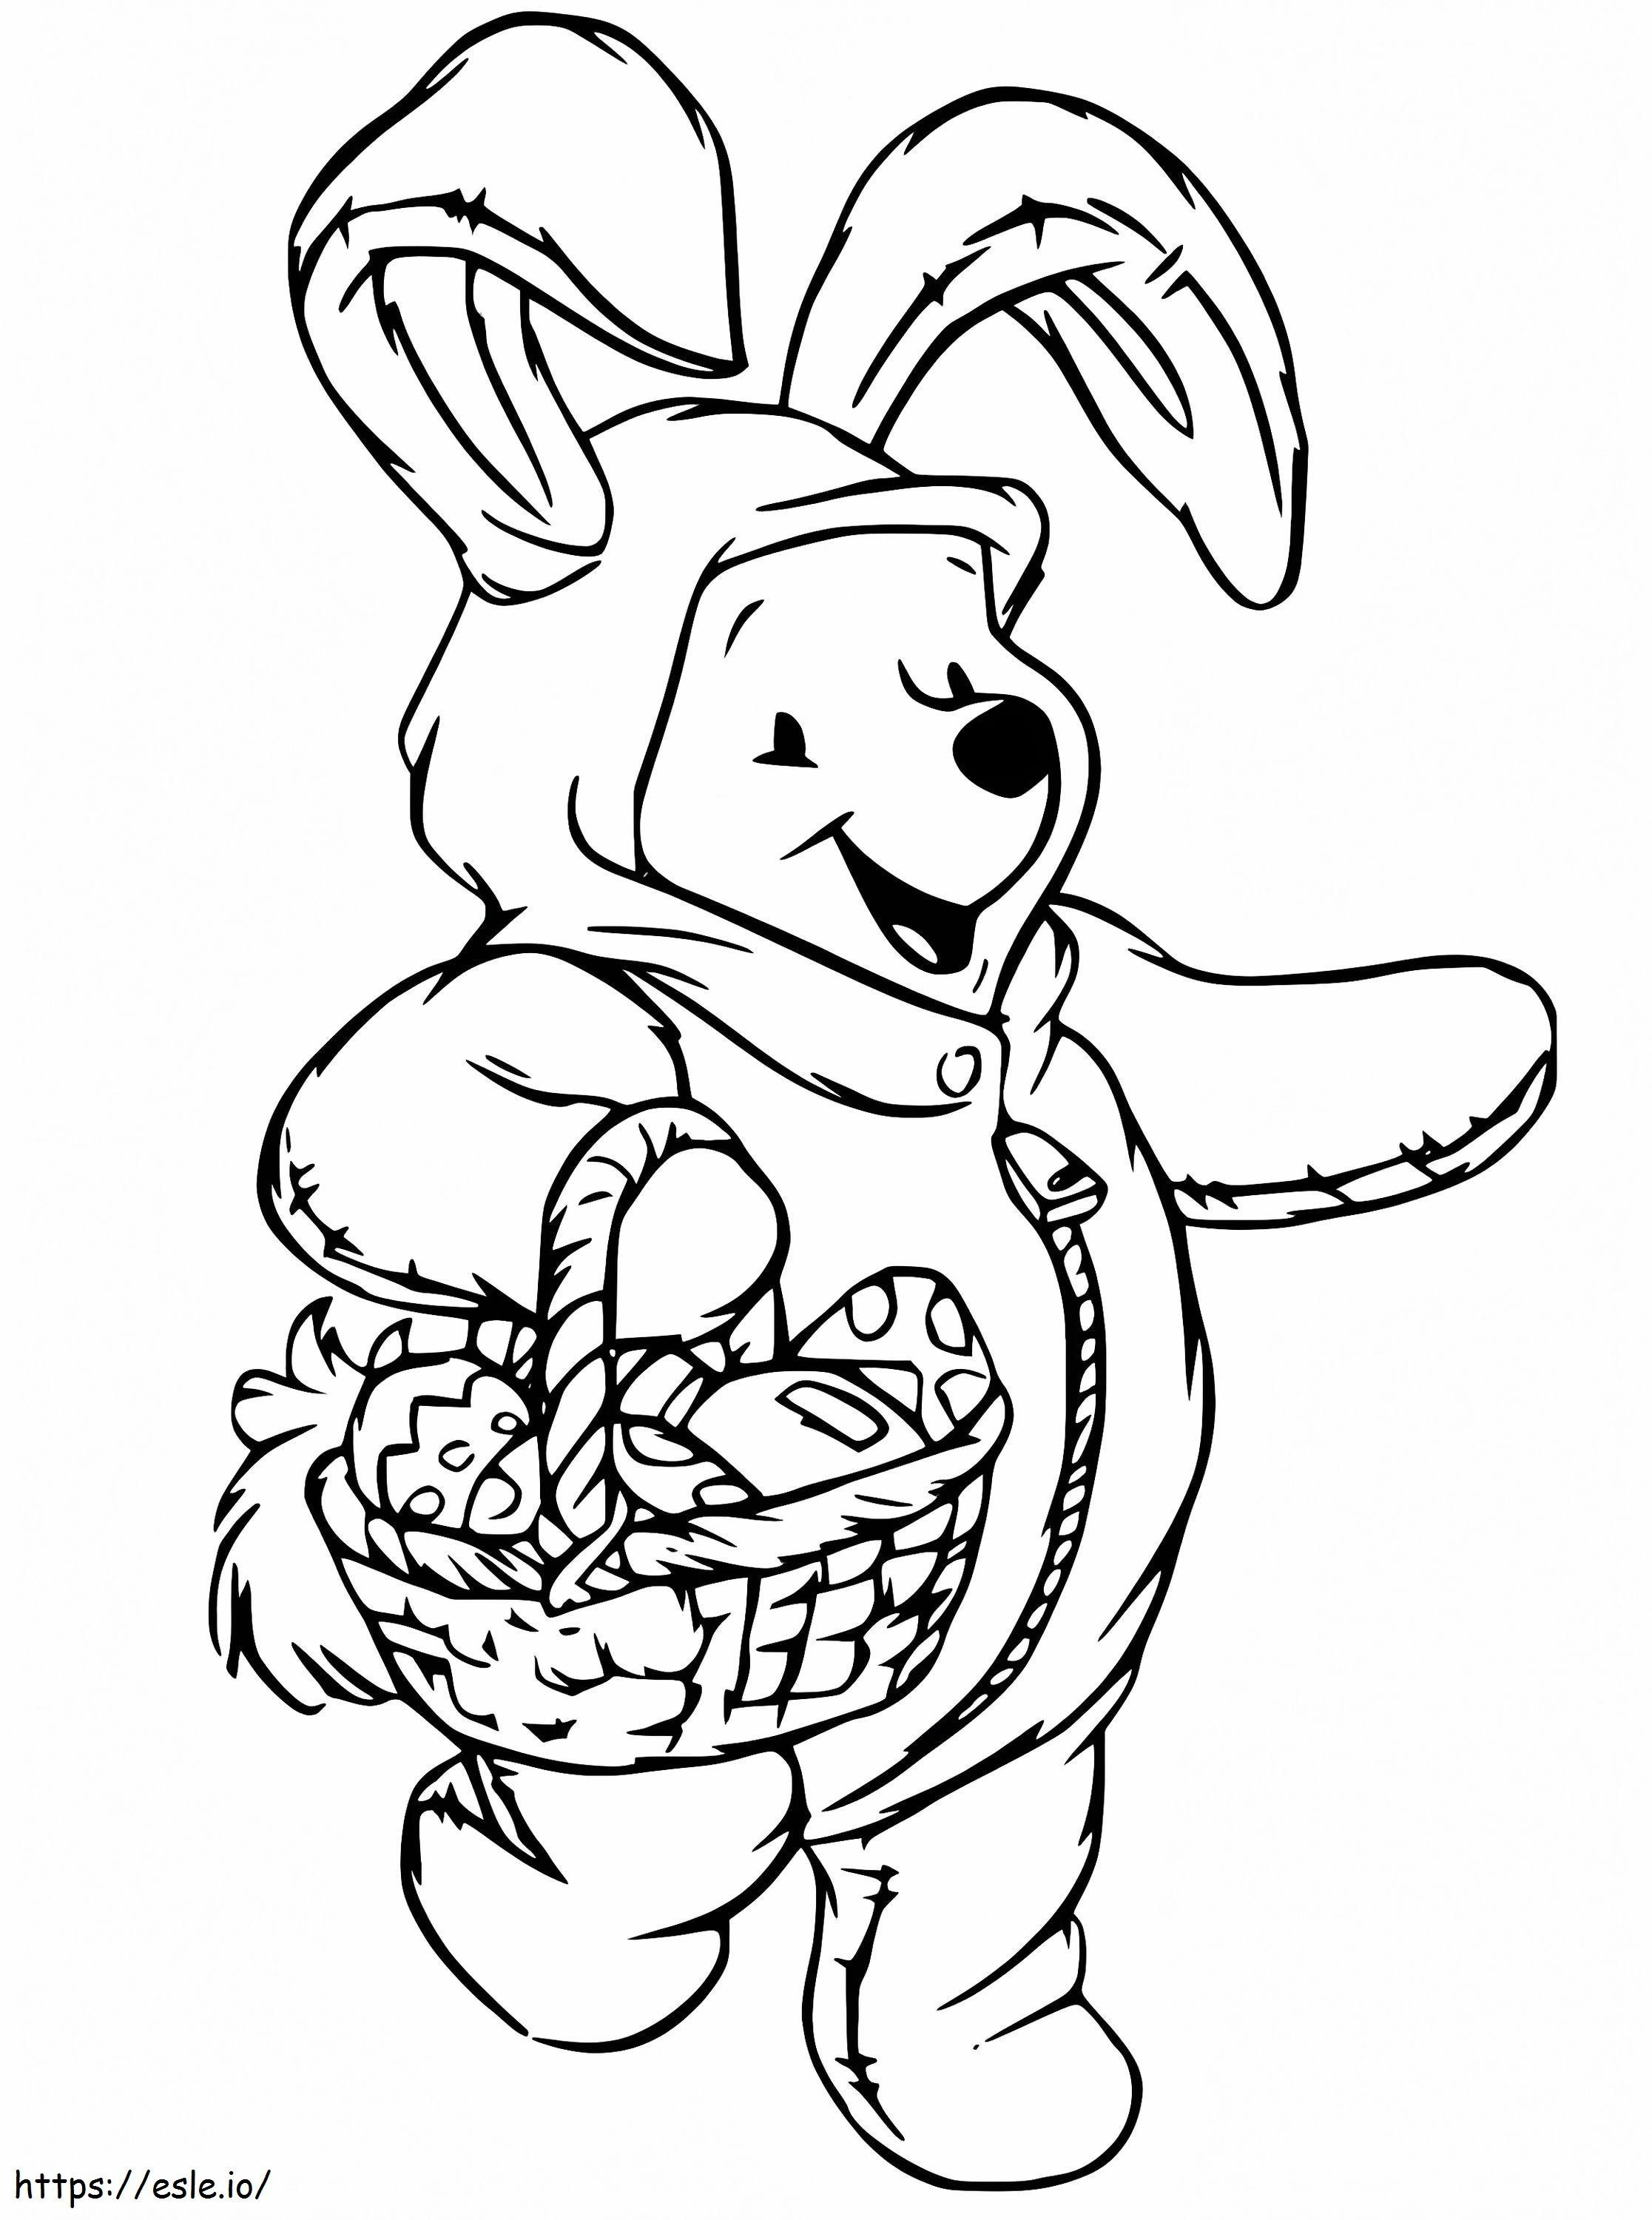 Winnie the Pooh ținând un coș de Paște de colorat